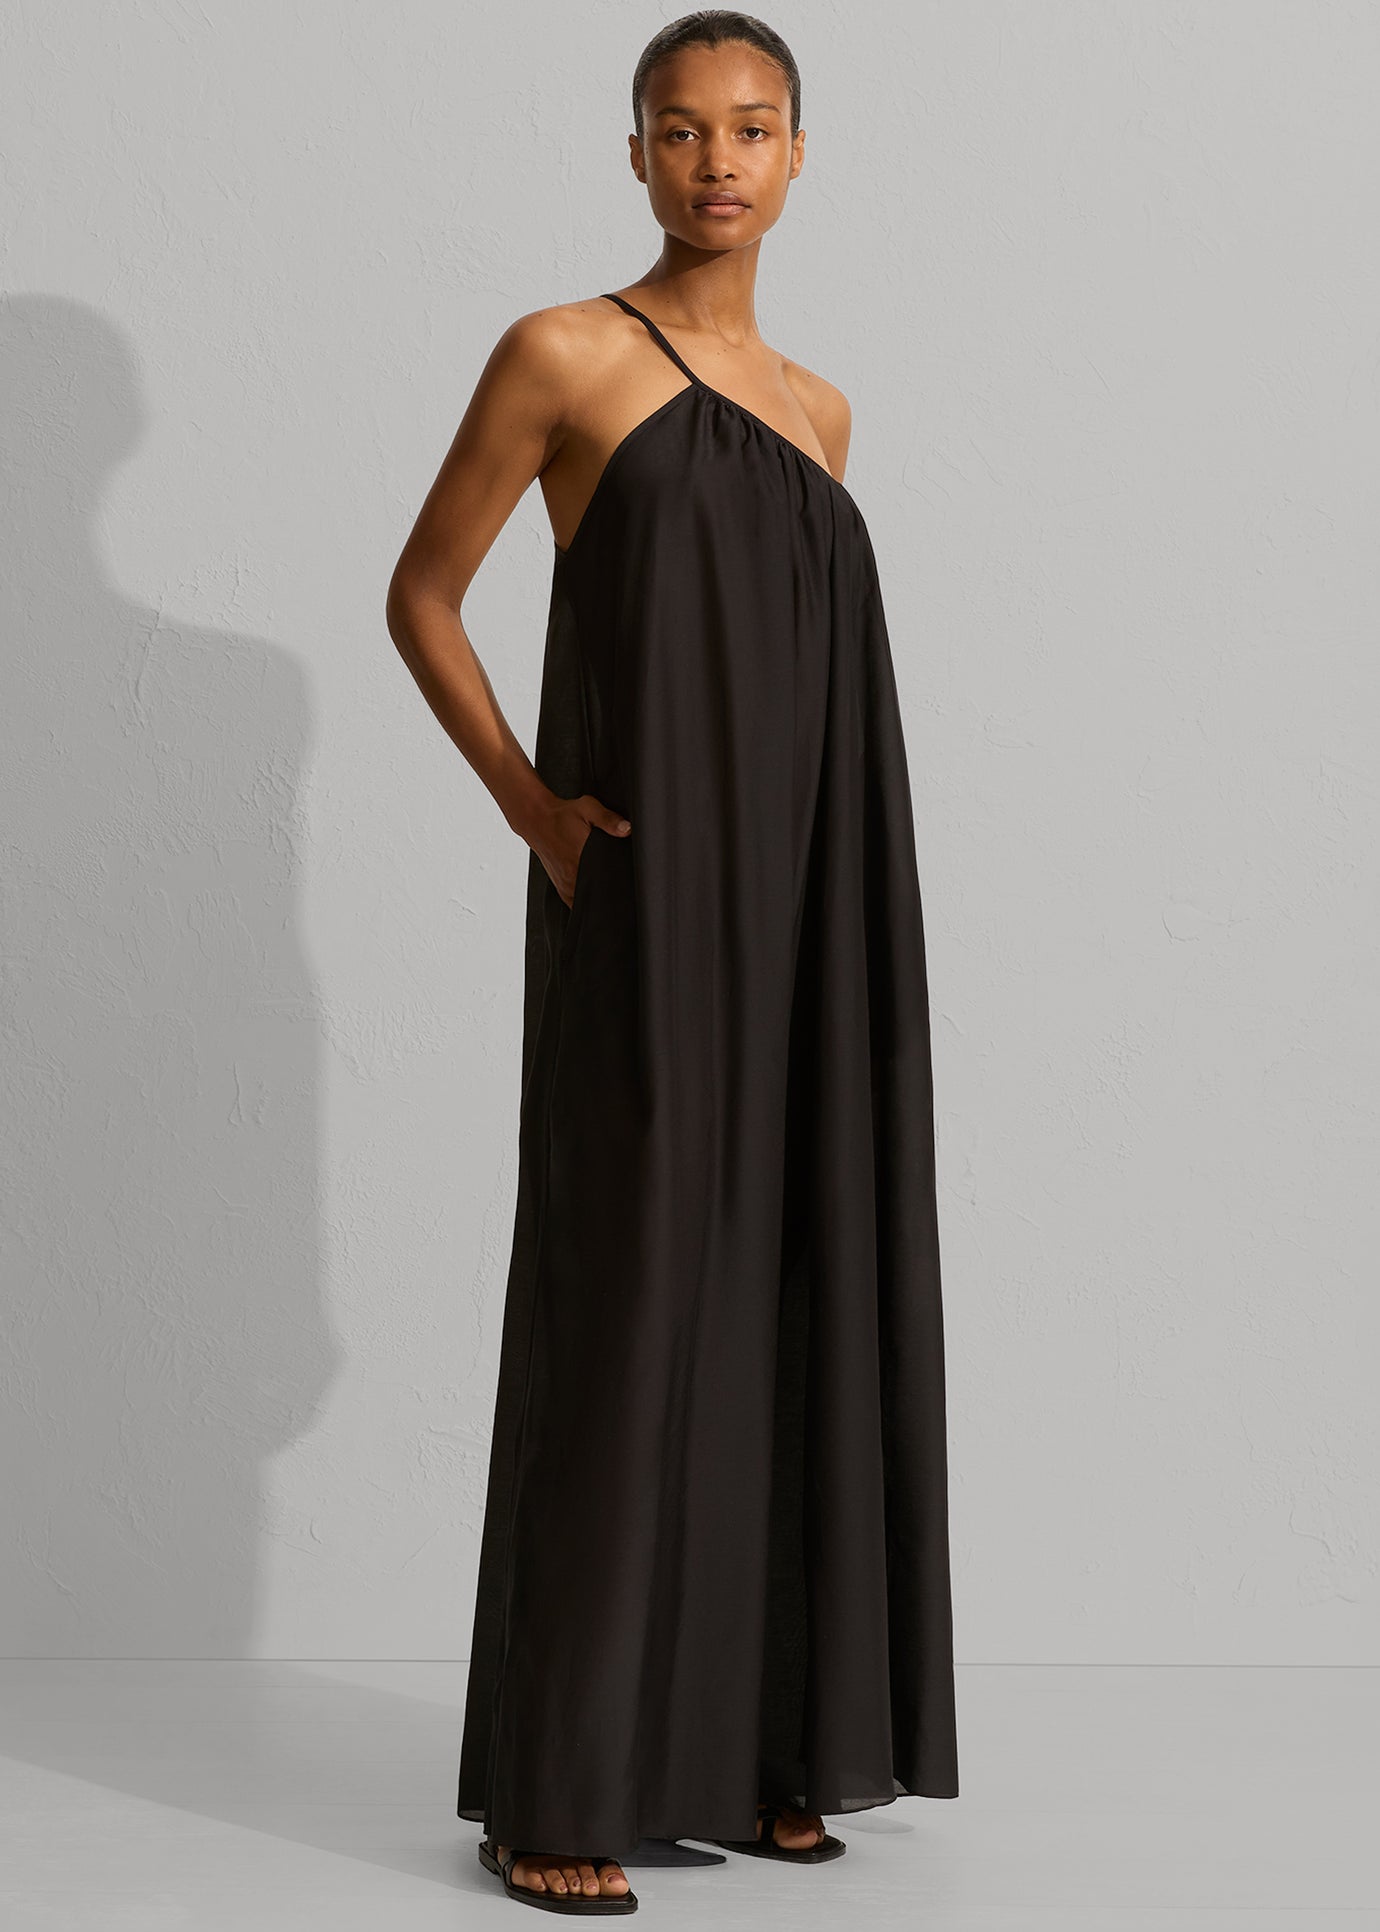 Matteau Voluminous One Shoulder Dress - Black